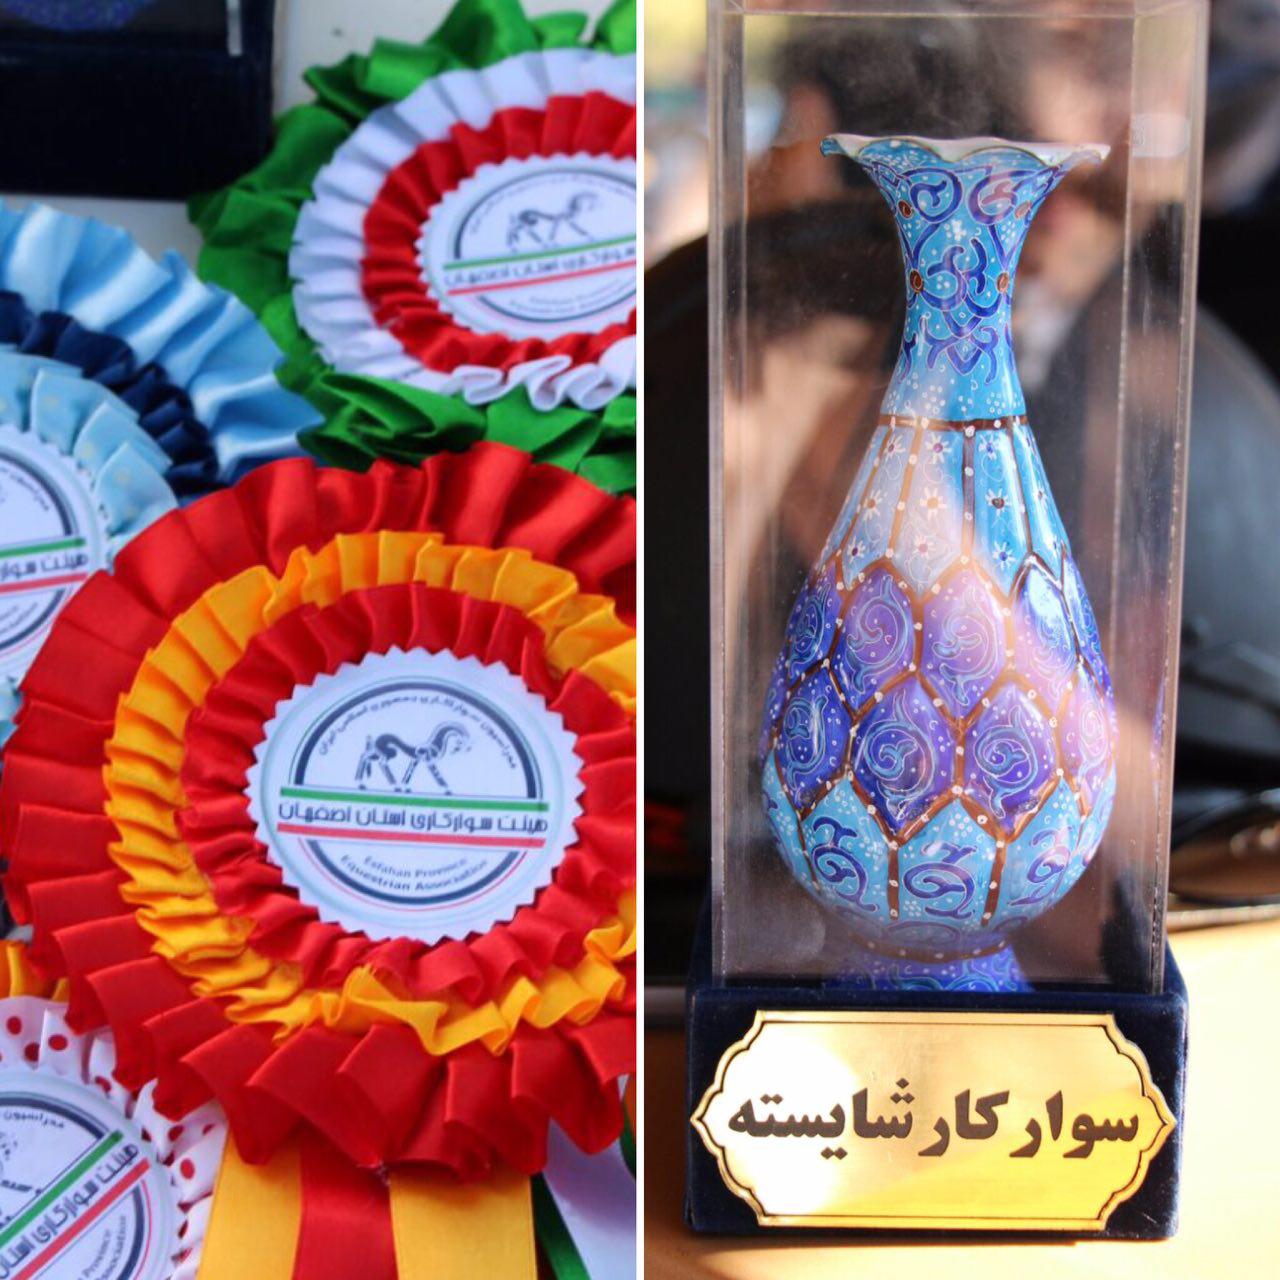 نتایج سیزدهمین مسابقه پرش با اسب هیأت سوارکاری استان اصفهان در سال 95